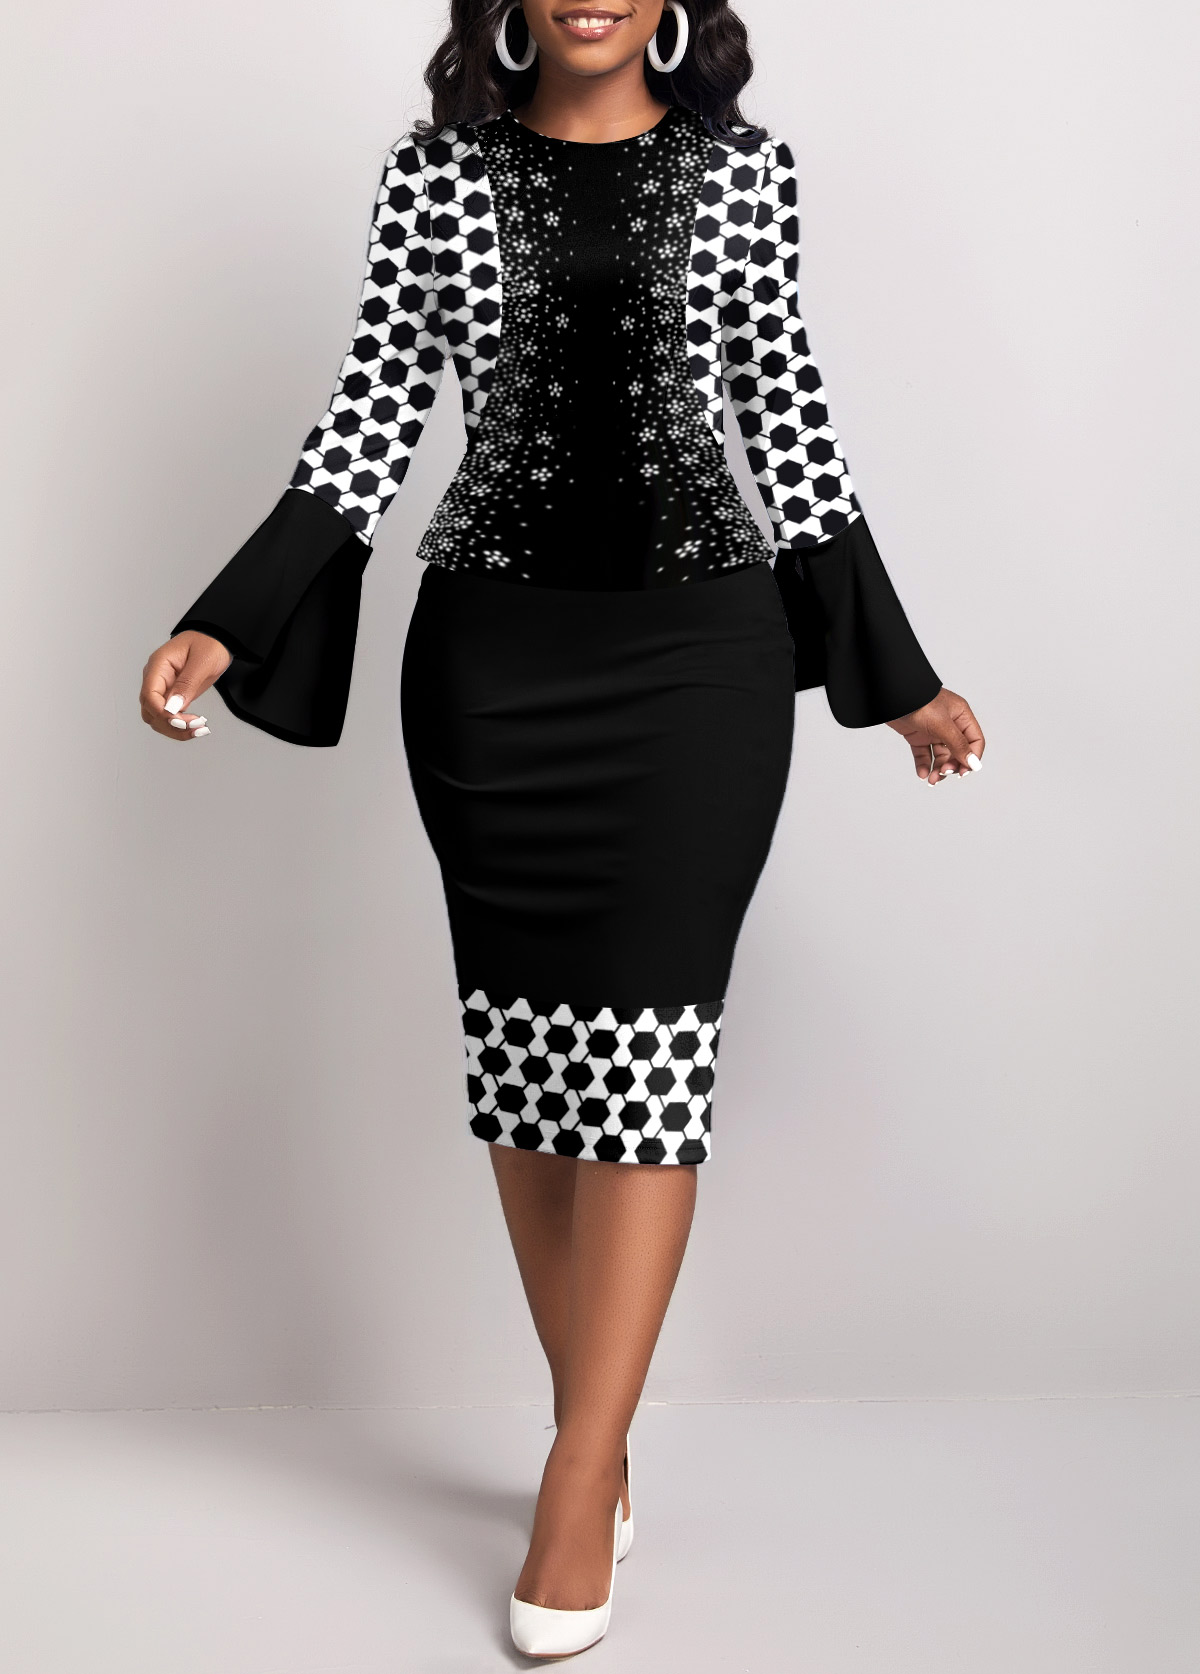 Rotita Fake 2in1 schwarzes figurbetontes Kleid mit geometrischem Print